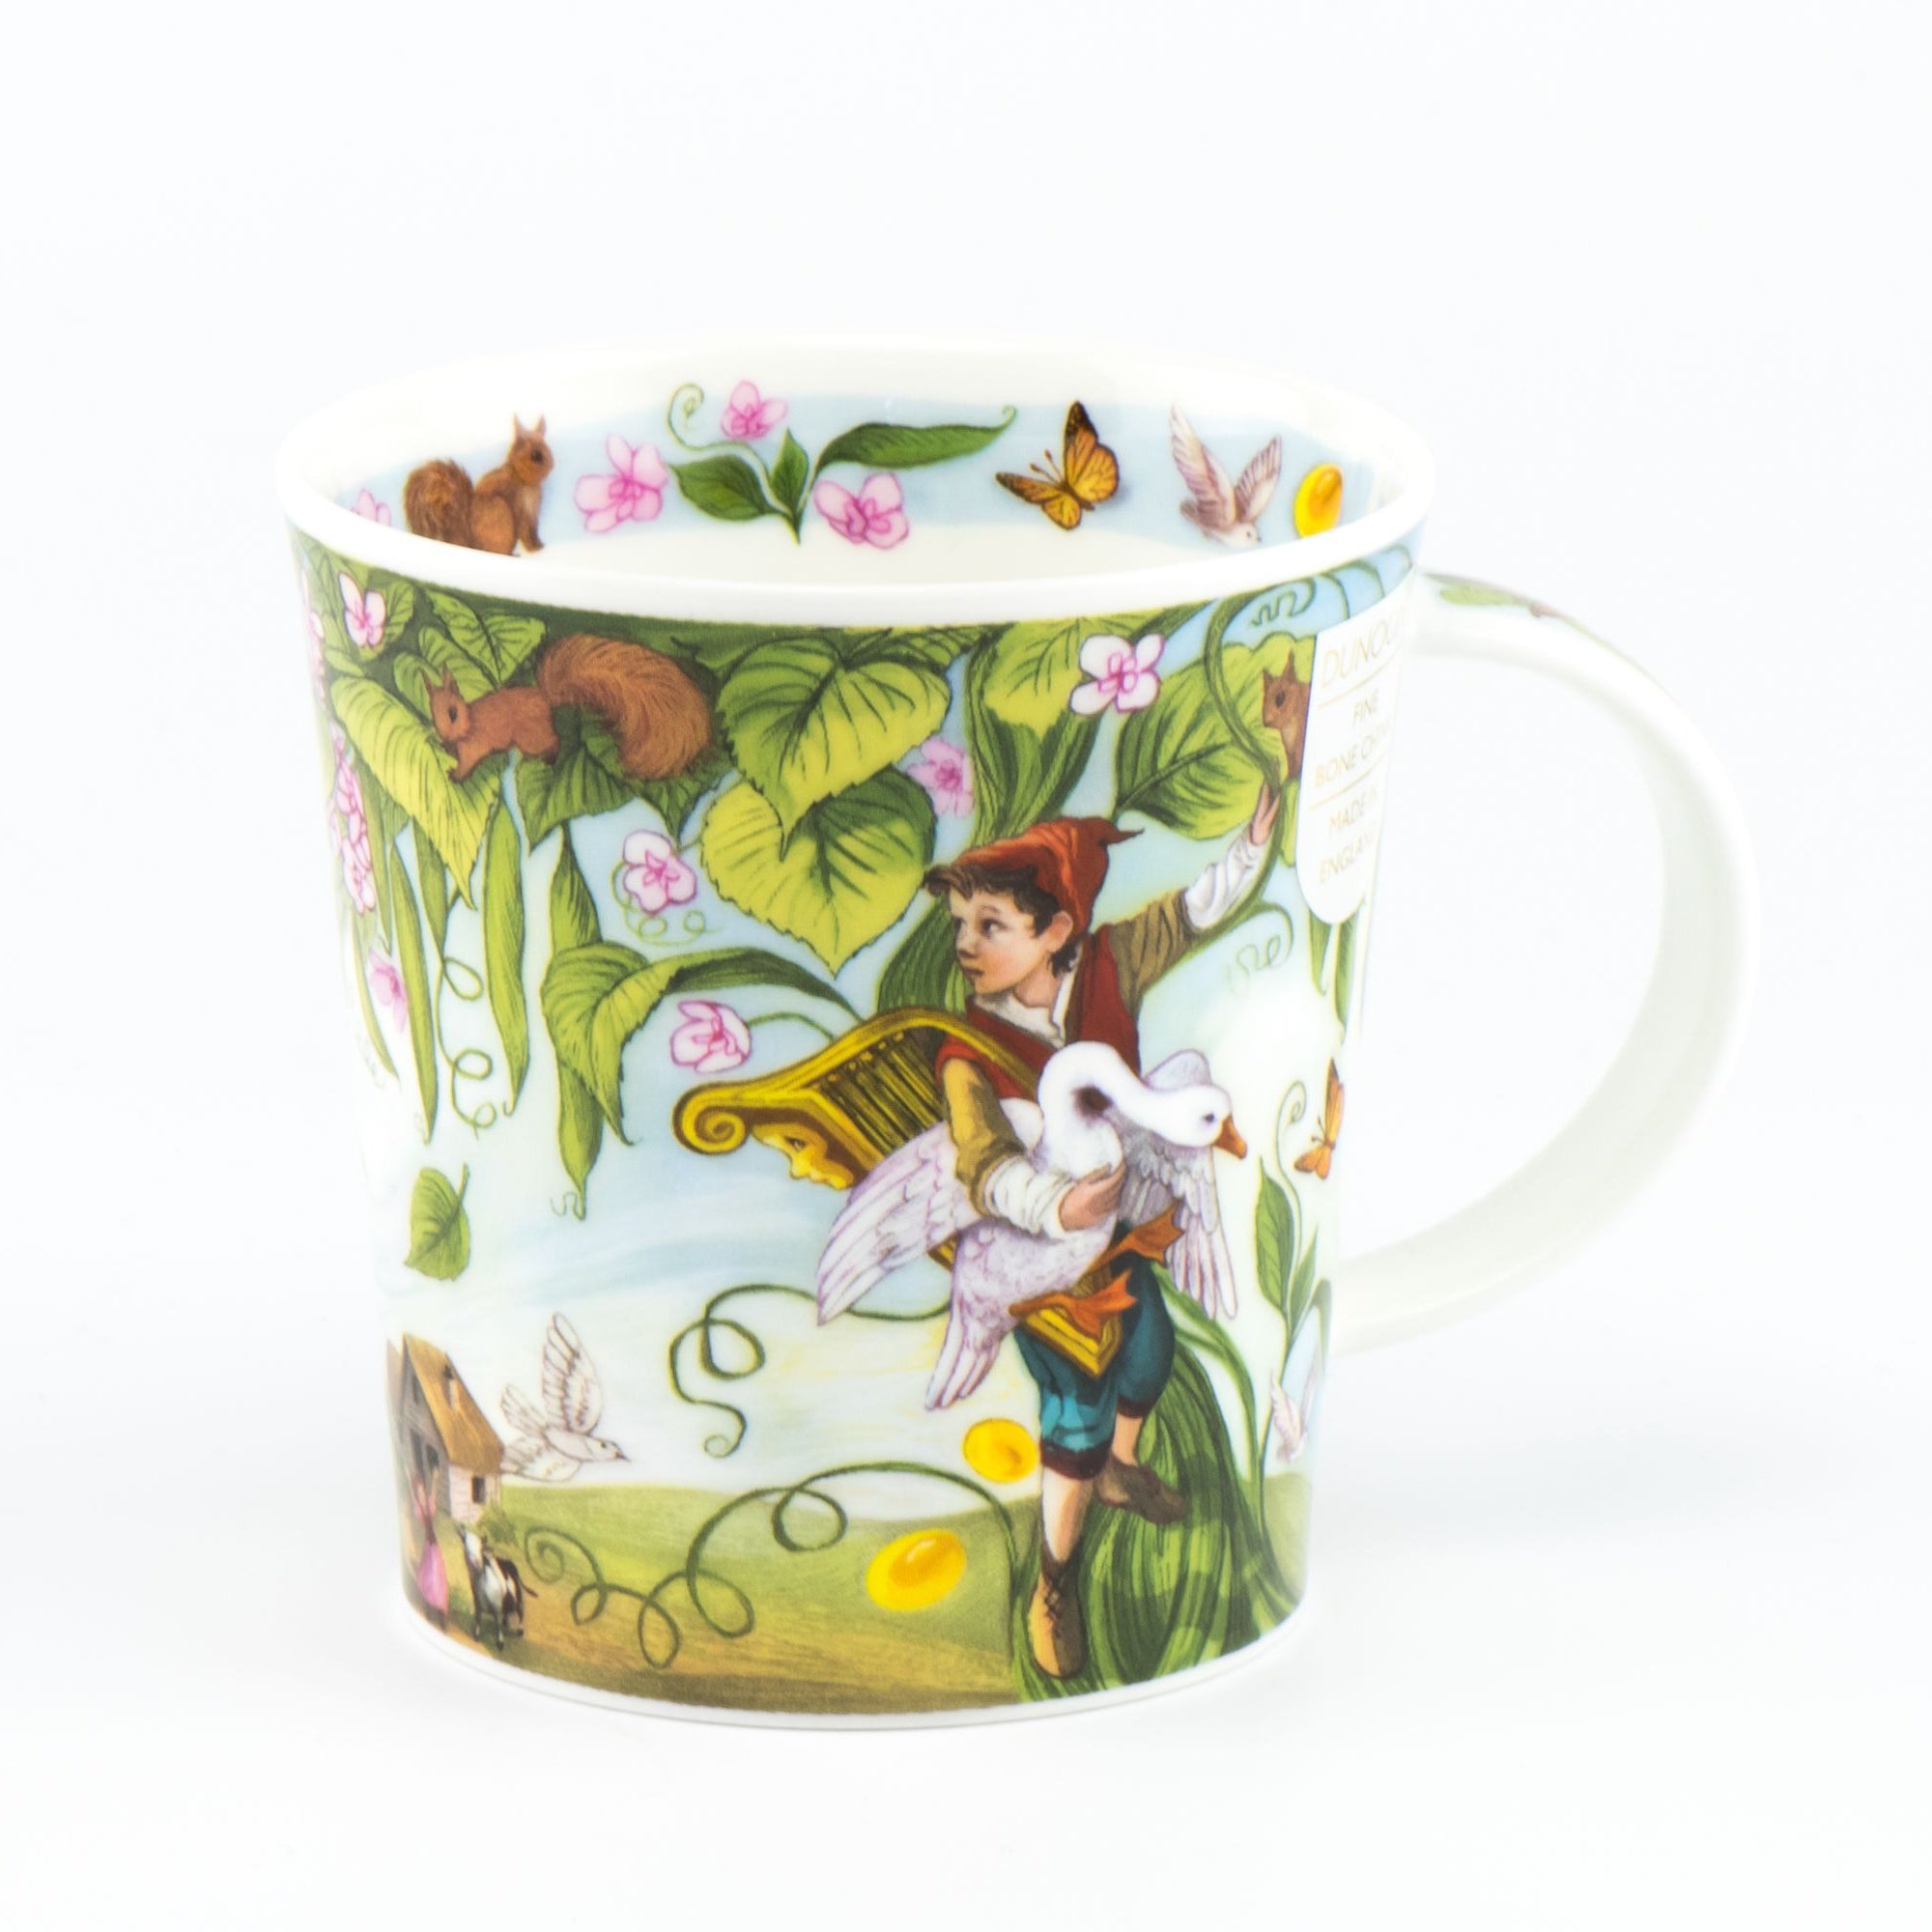 Dunoon Becher Teetasse Kaffeetasse Lomond Fairy Tales Hans und die Bohnenranke